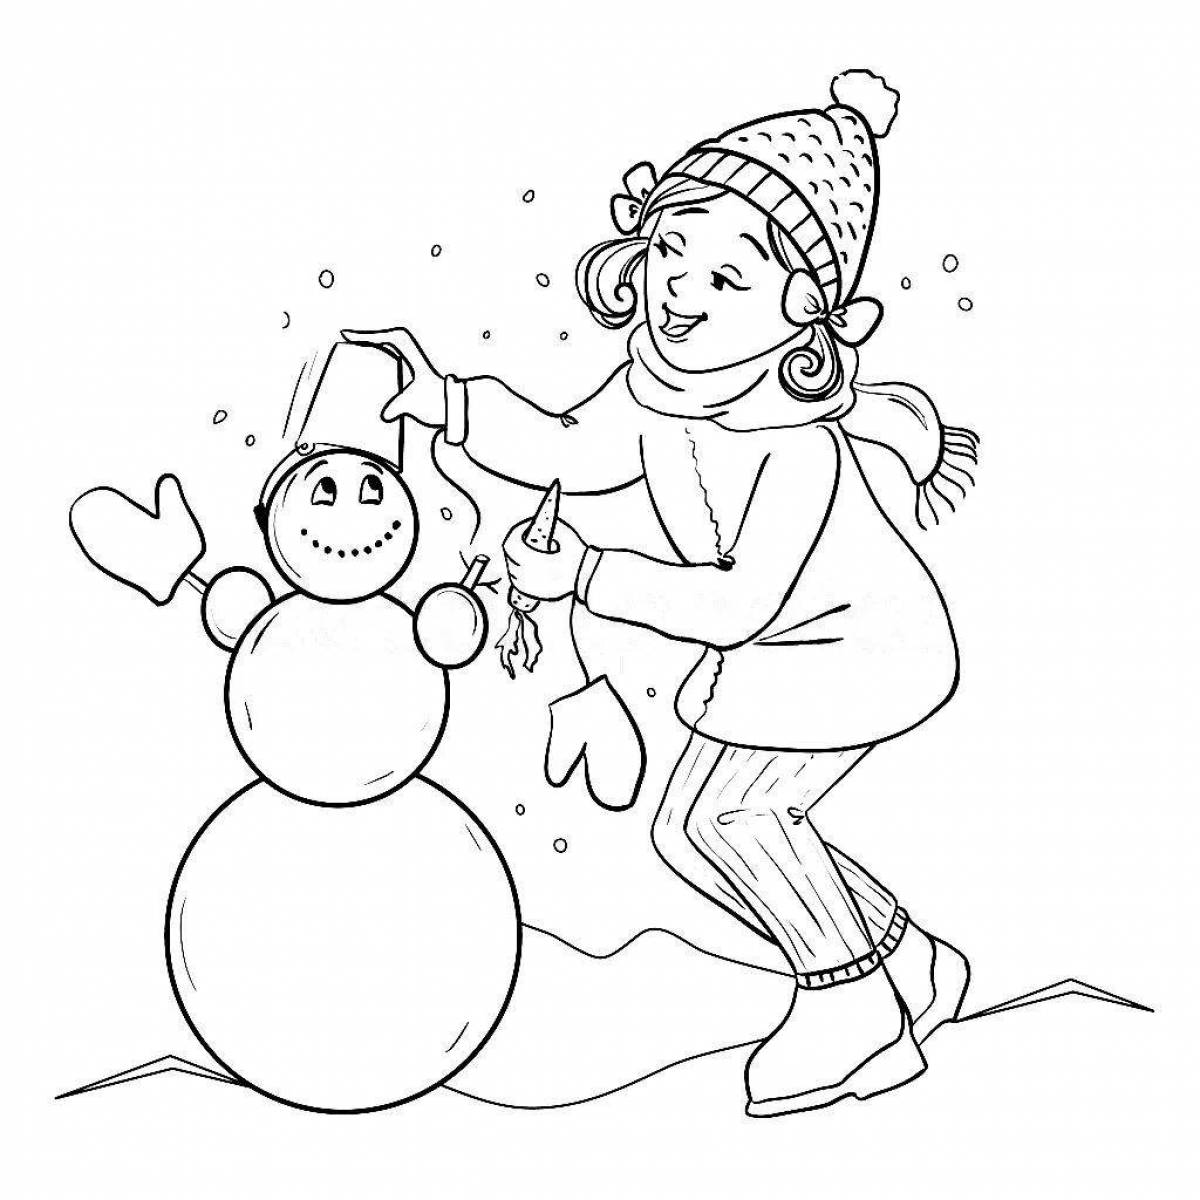 Веселая раскраска снеговик для детей